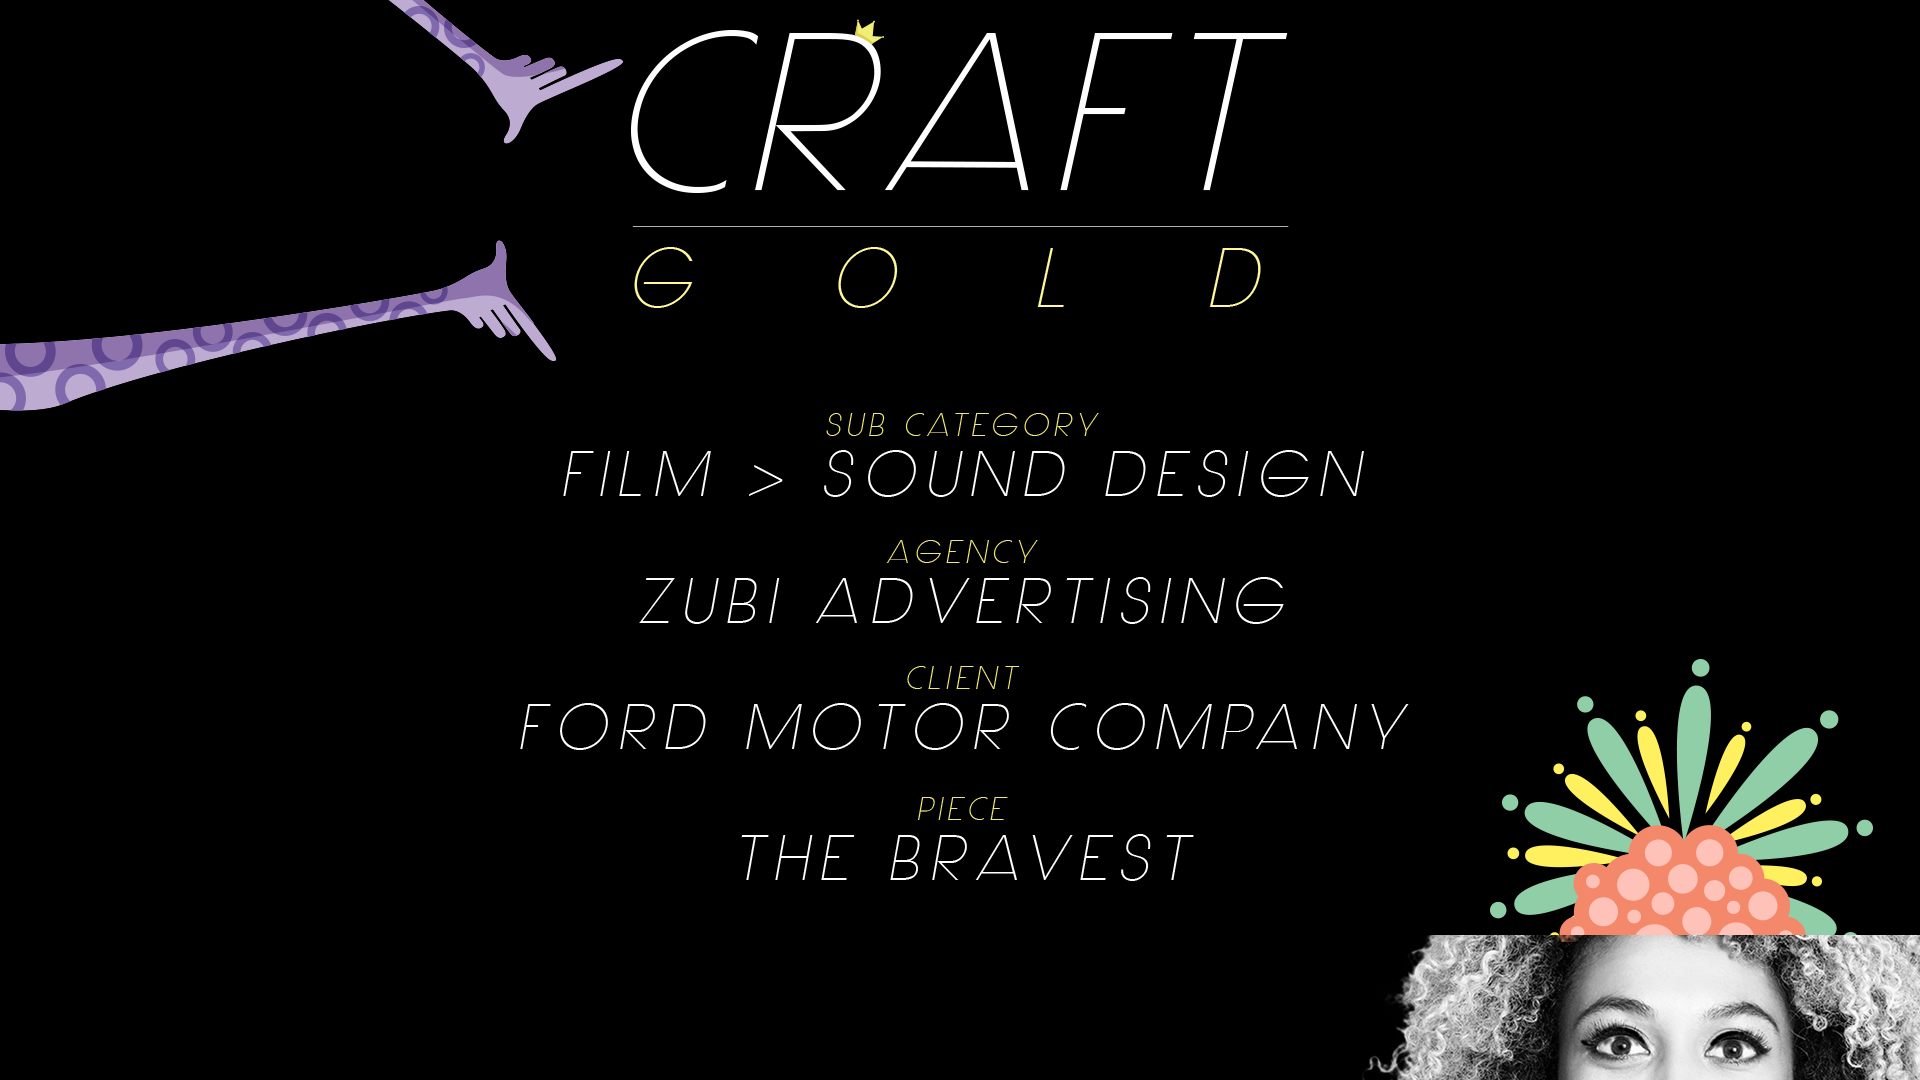 PLACAS GOLD-craft-FILM - SOUND DESIGN.png